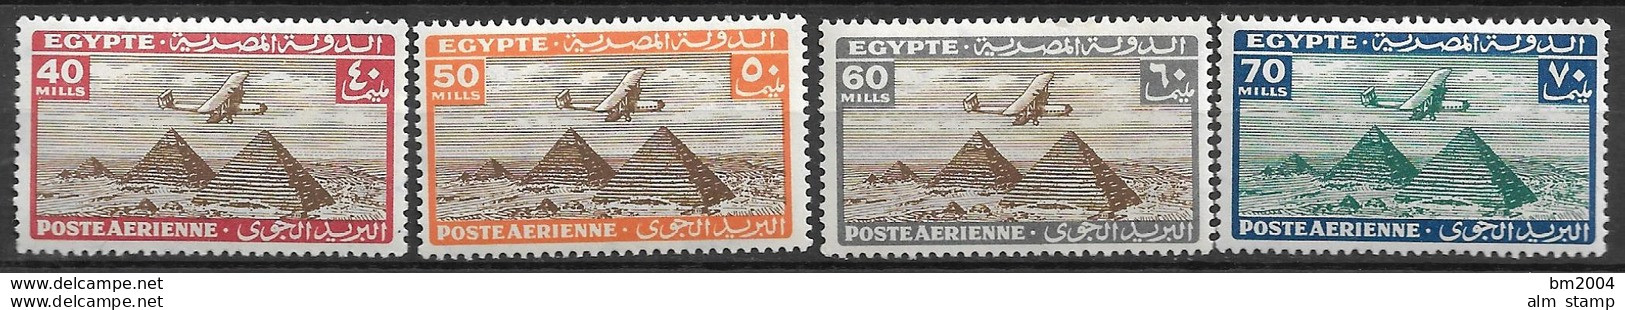 1933 Ägypten Mi. 164-83 * NH + **MNH  Flugzeug über den Pyramiden von Giseh